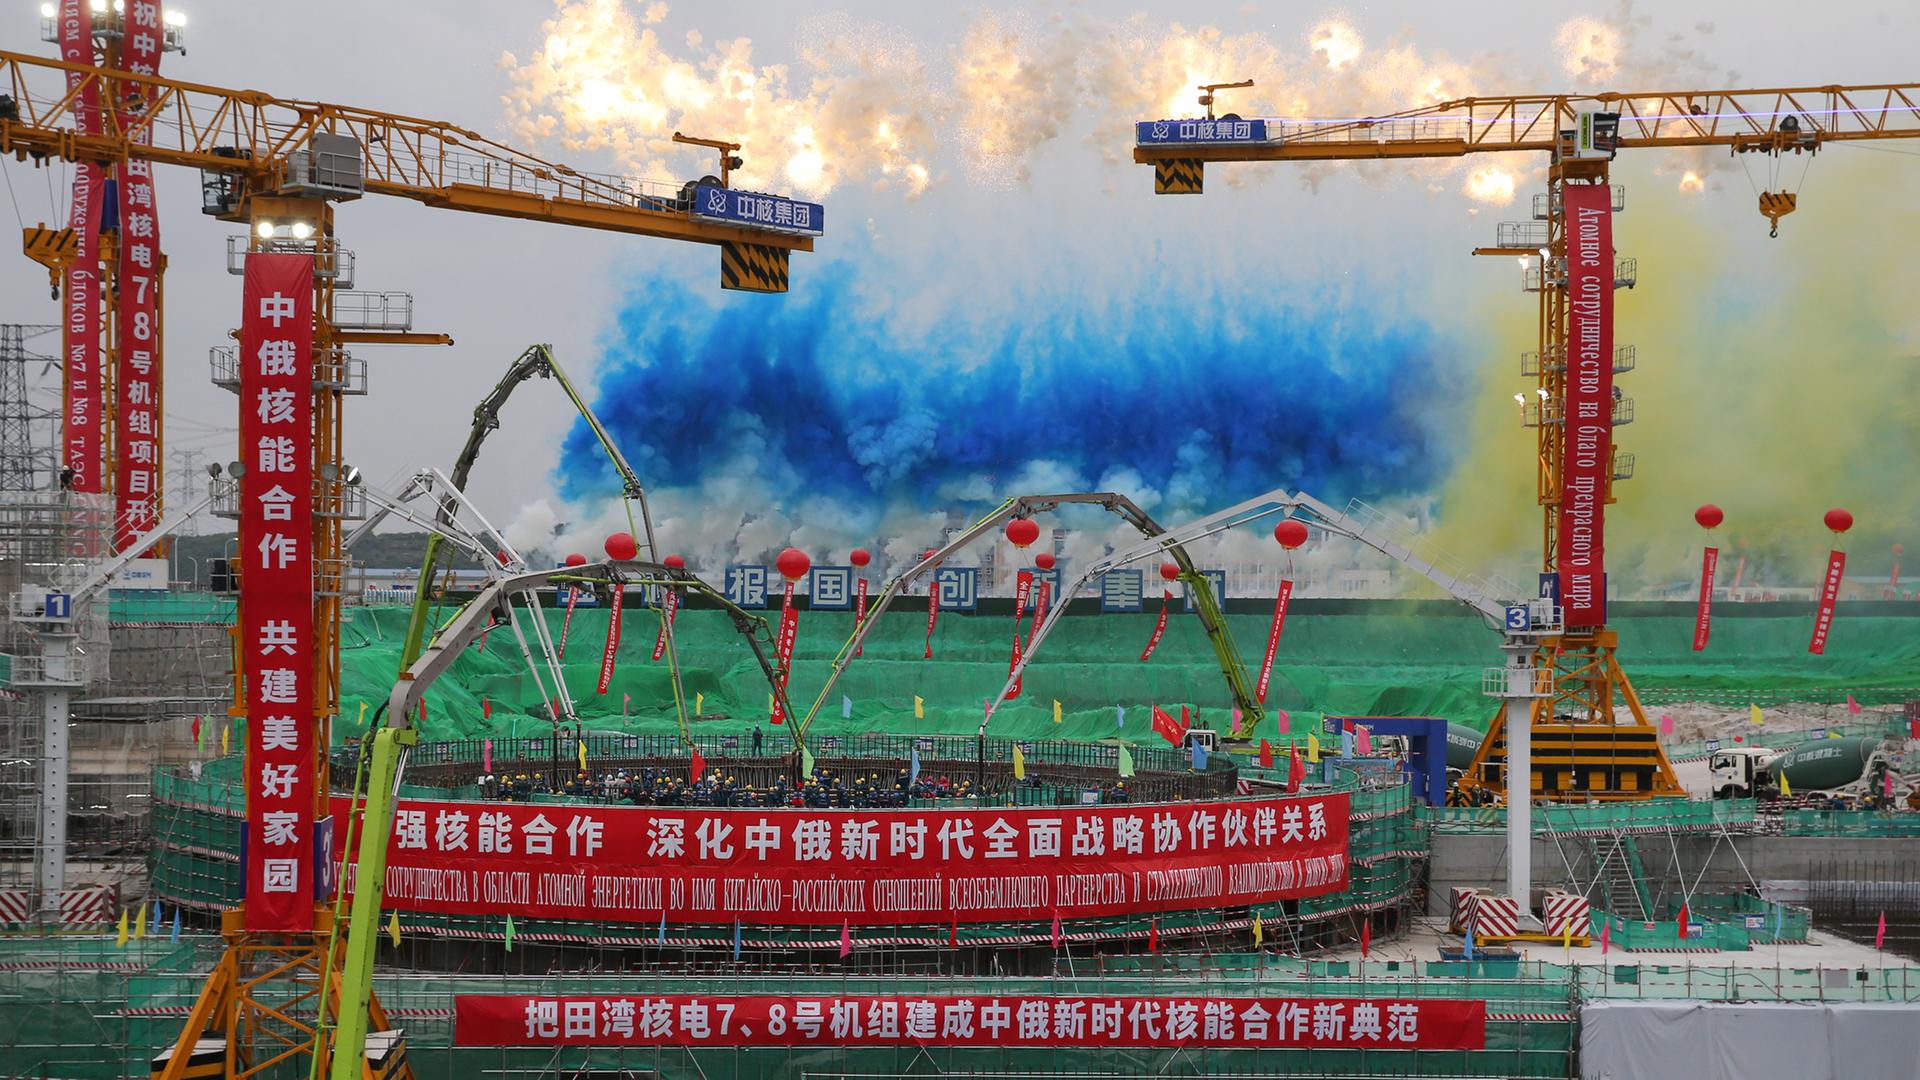 Der Bau eines Reaktors in China - auf einem Banner sind chinesischer Schriftzeichen.